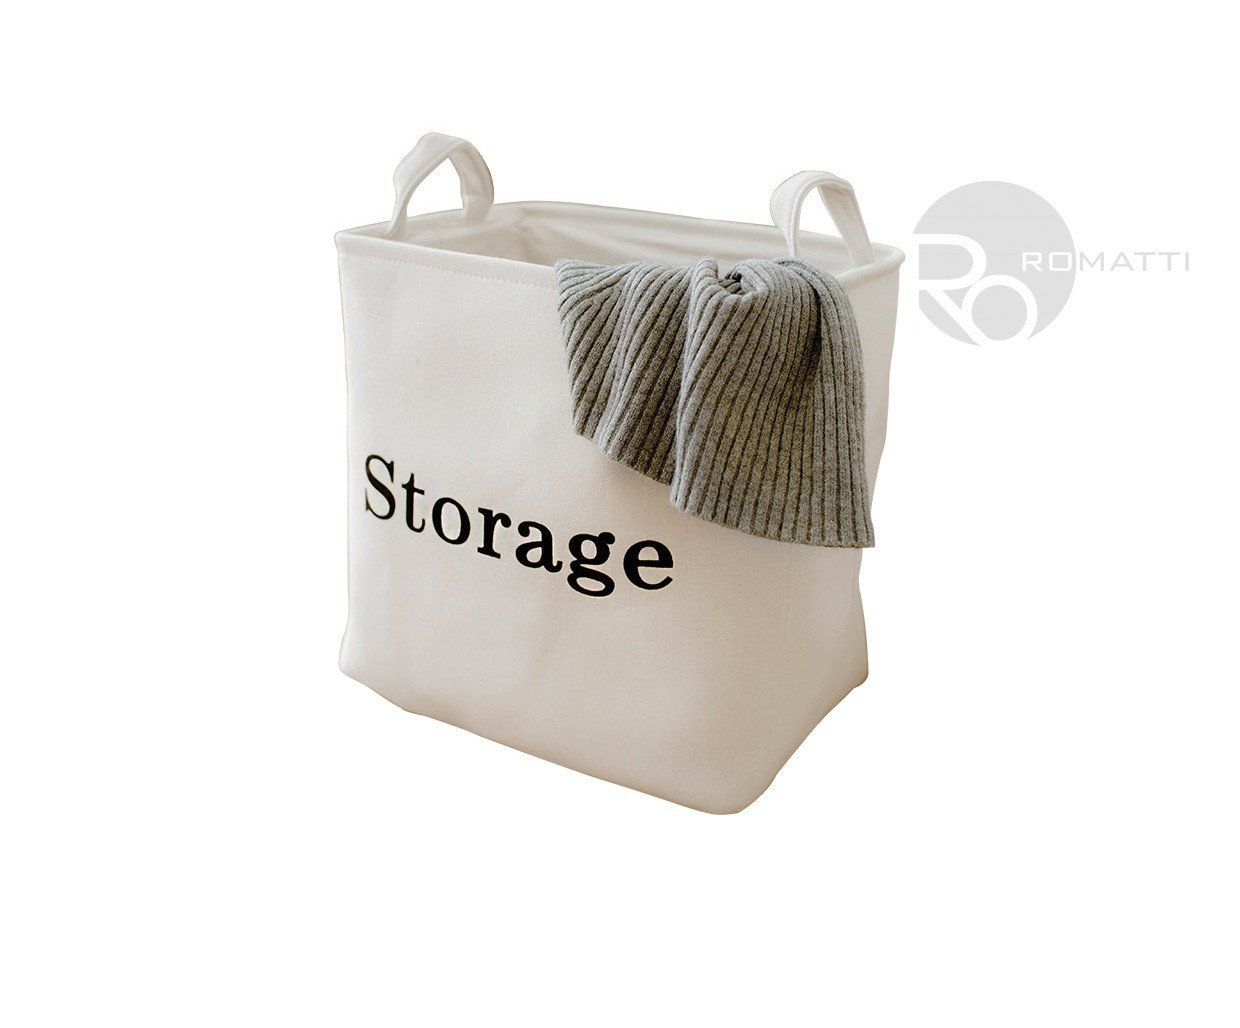 Storage Basket Storage by Romatti